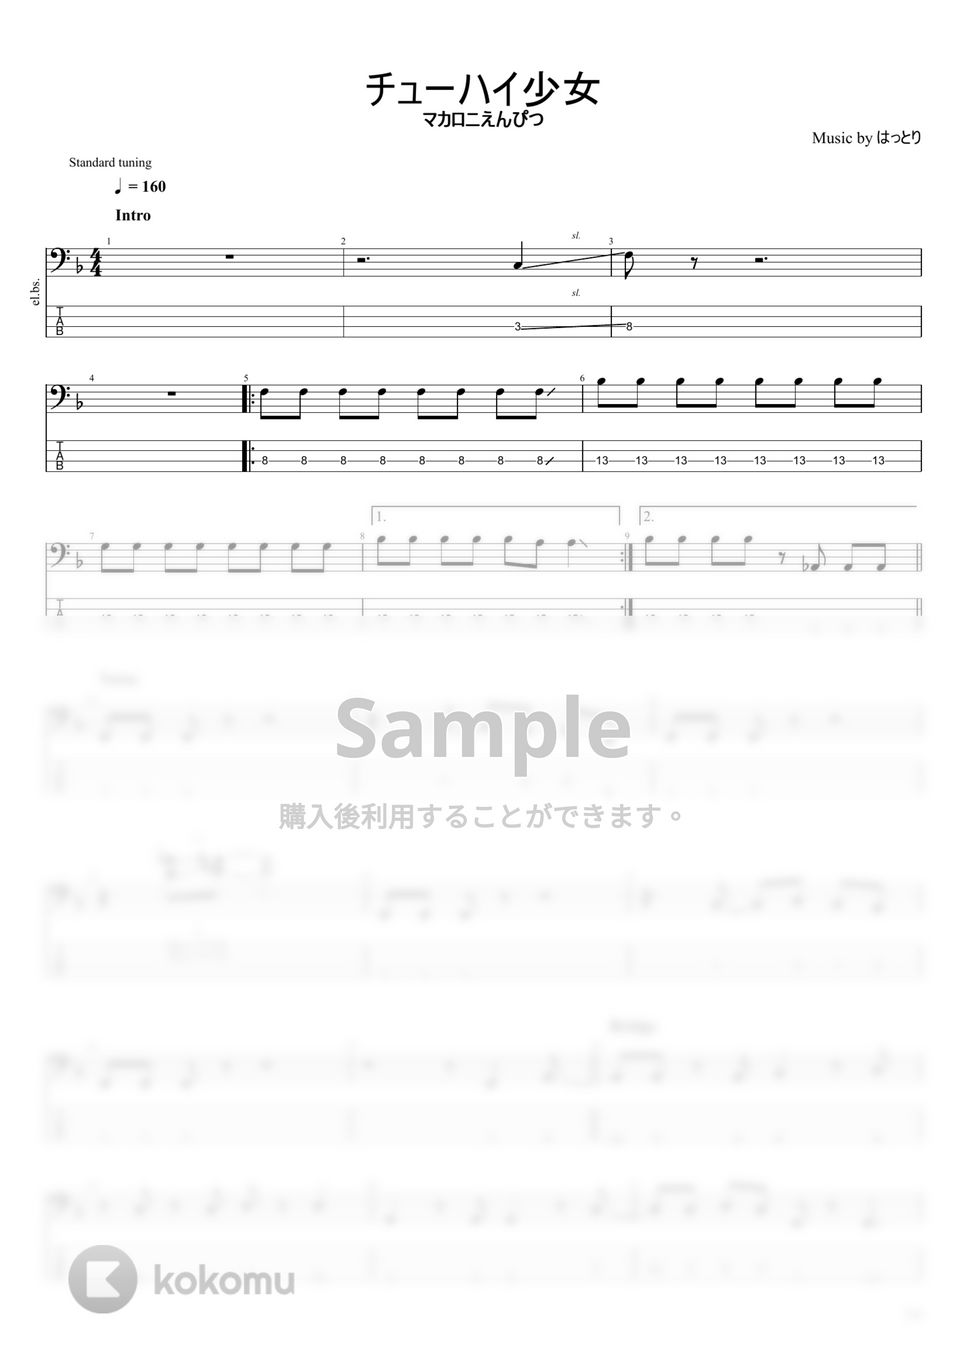 マカロニえんぴつ - マカロニえんぴつ楽譜集Vol.1 (10曲) by まっきん